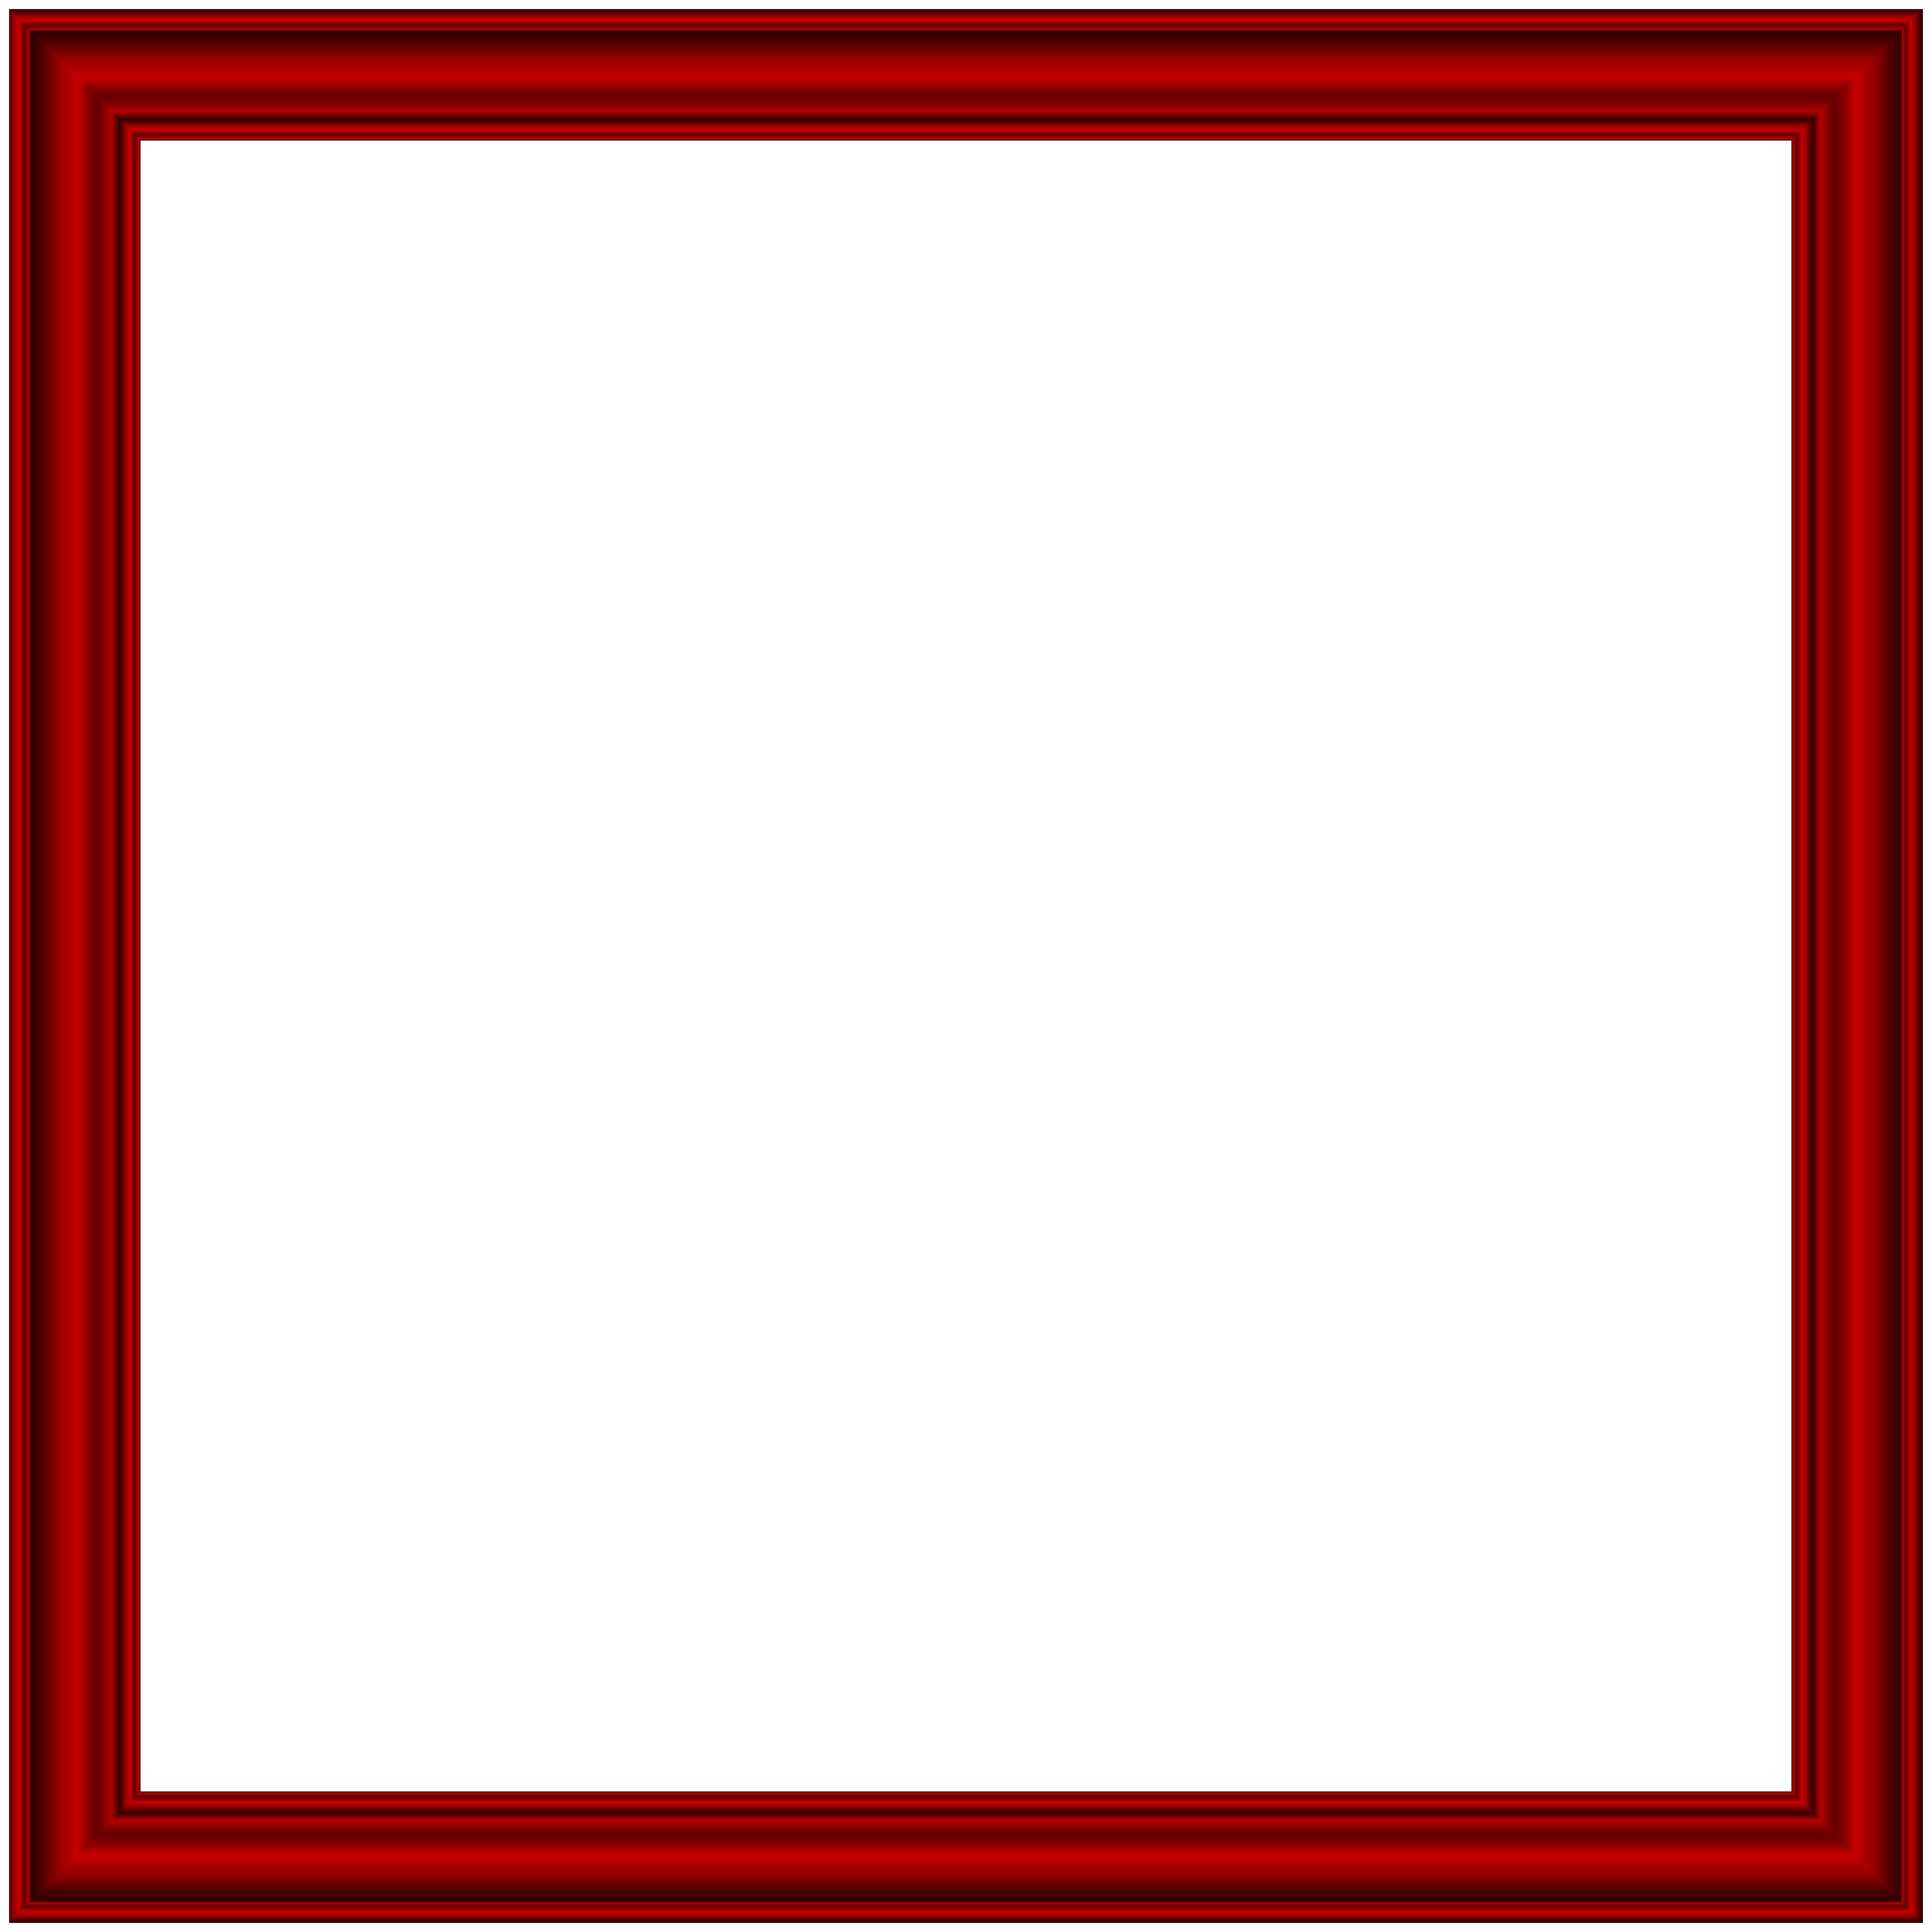 Clipart ruler border. Red frame transparent png